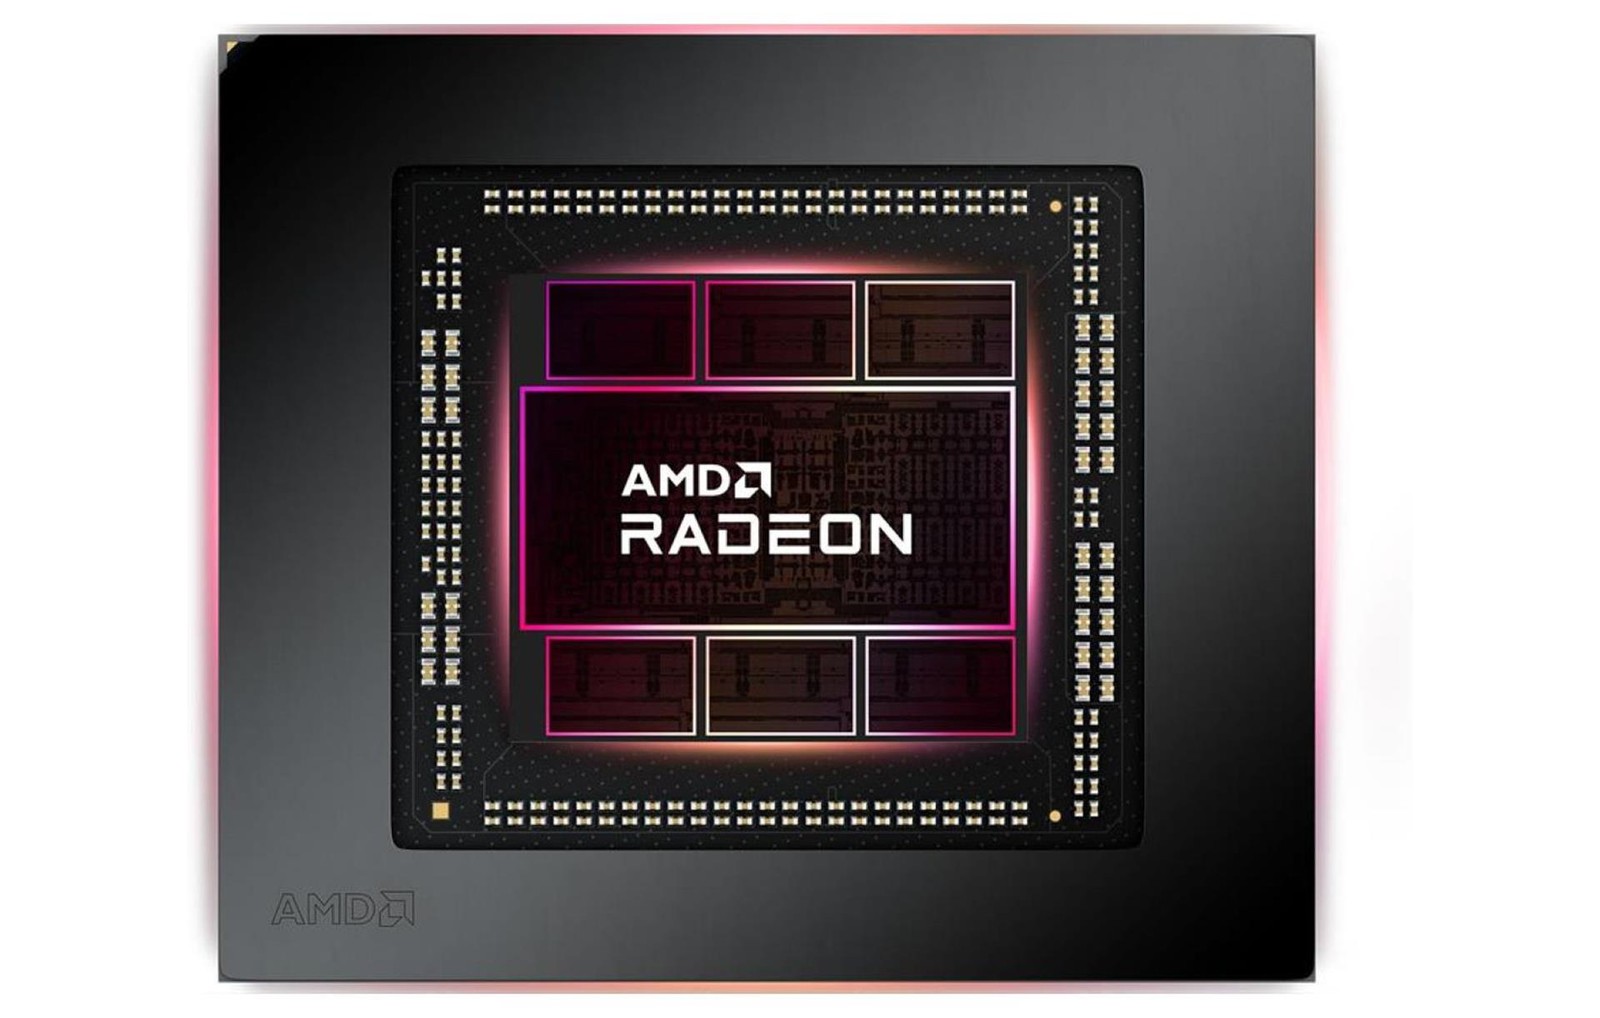 AMD przyznaje: tak, zawyżamy ceny i co z tego? Czerwoni bardzo się starają, żebyśmy przestali ich lubić.